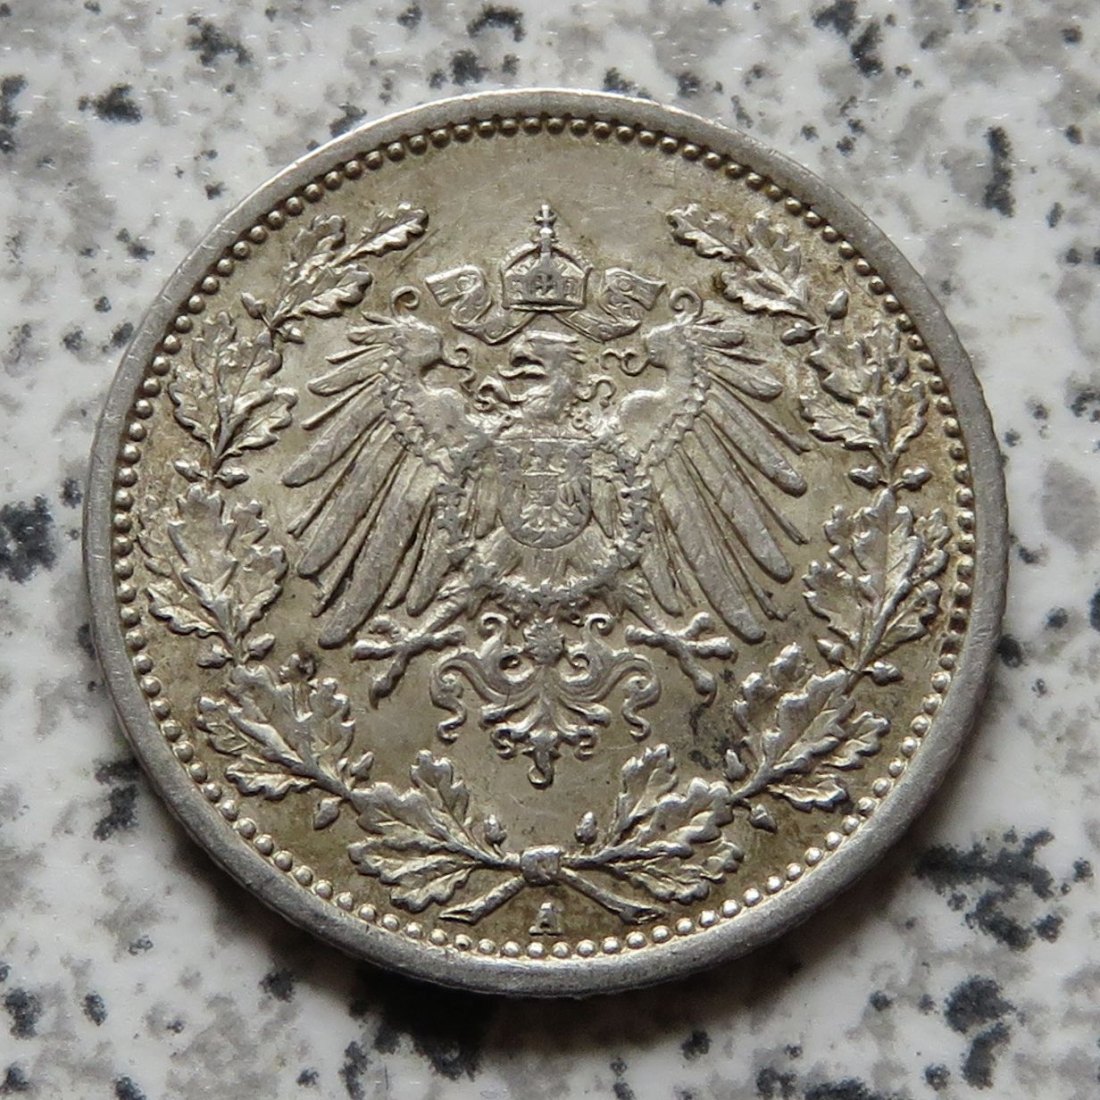  Kaiserreich 1/2 Mark 1915 A   